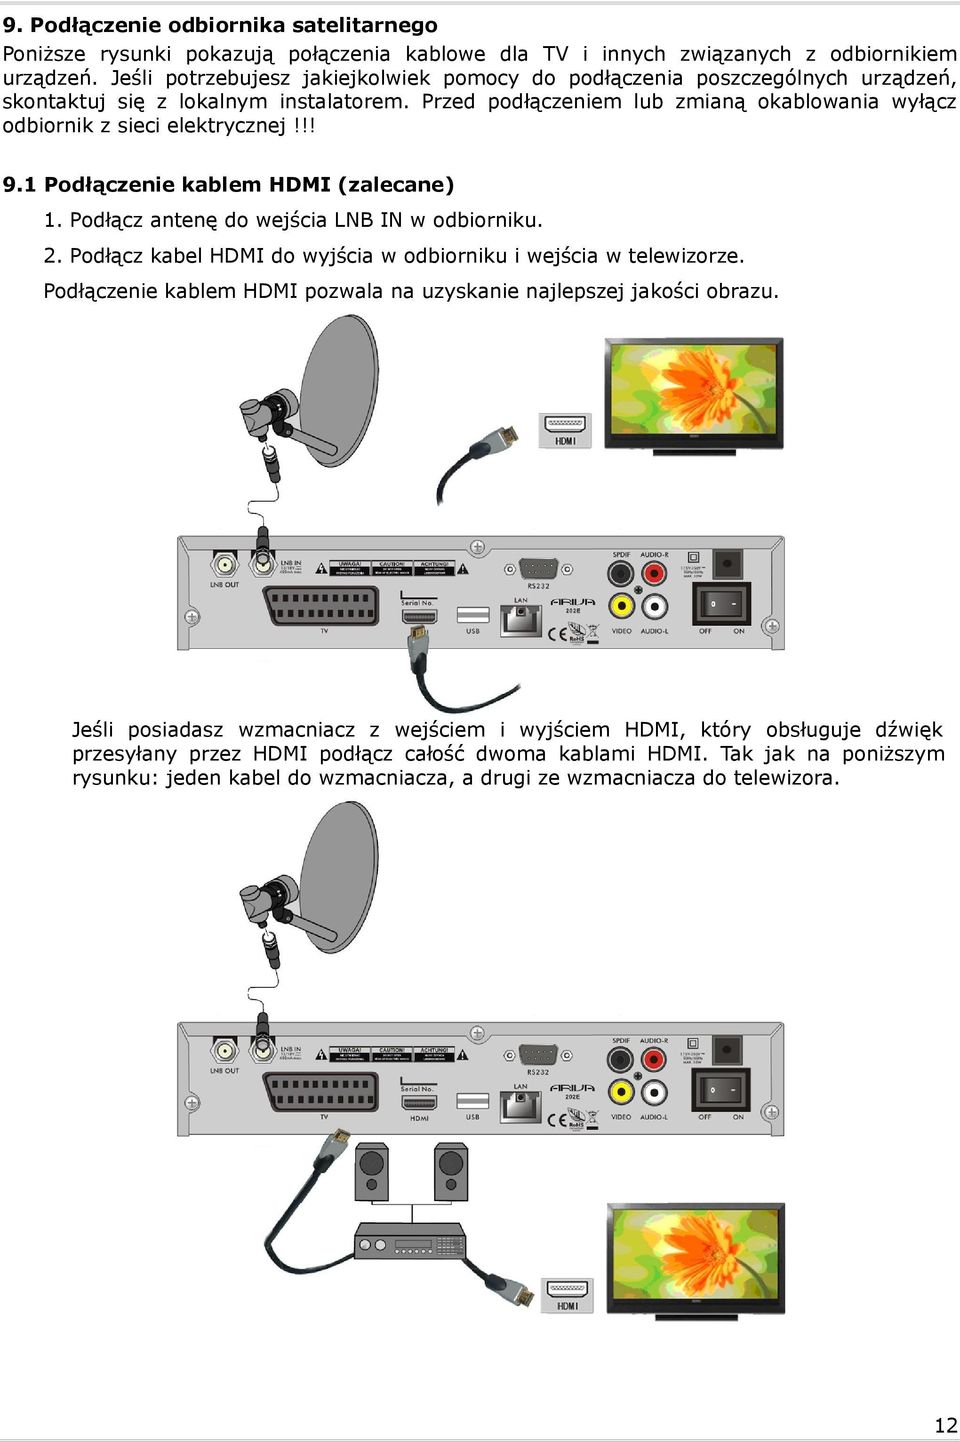 !! 9.1 Podłączenie kablem HDMI (zalecane) 1. Podłącz antenę do wejścia LNB IN w odbiorniku. 2. Podłącz kabel HDMI do wyjścia w odbiorniku i wejścia w telewizorze.